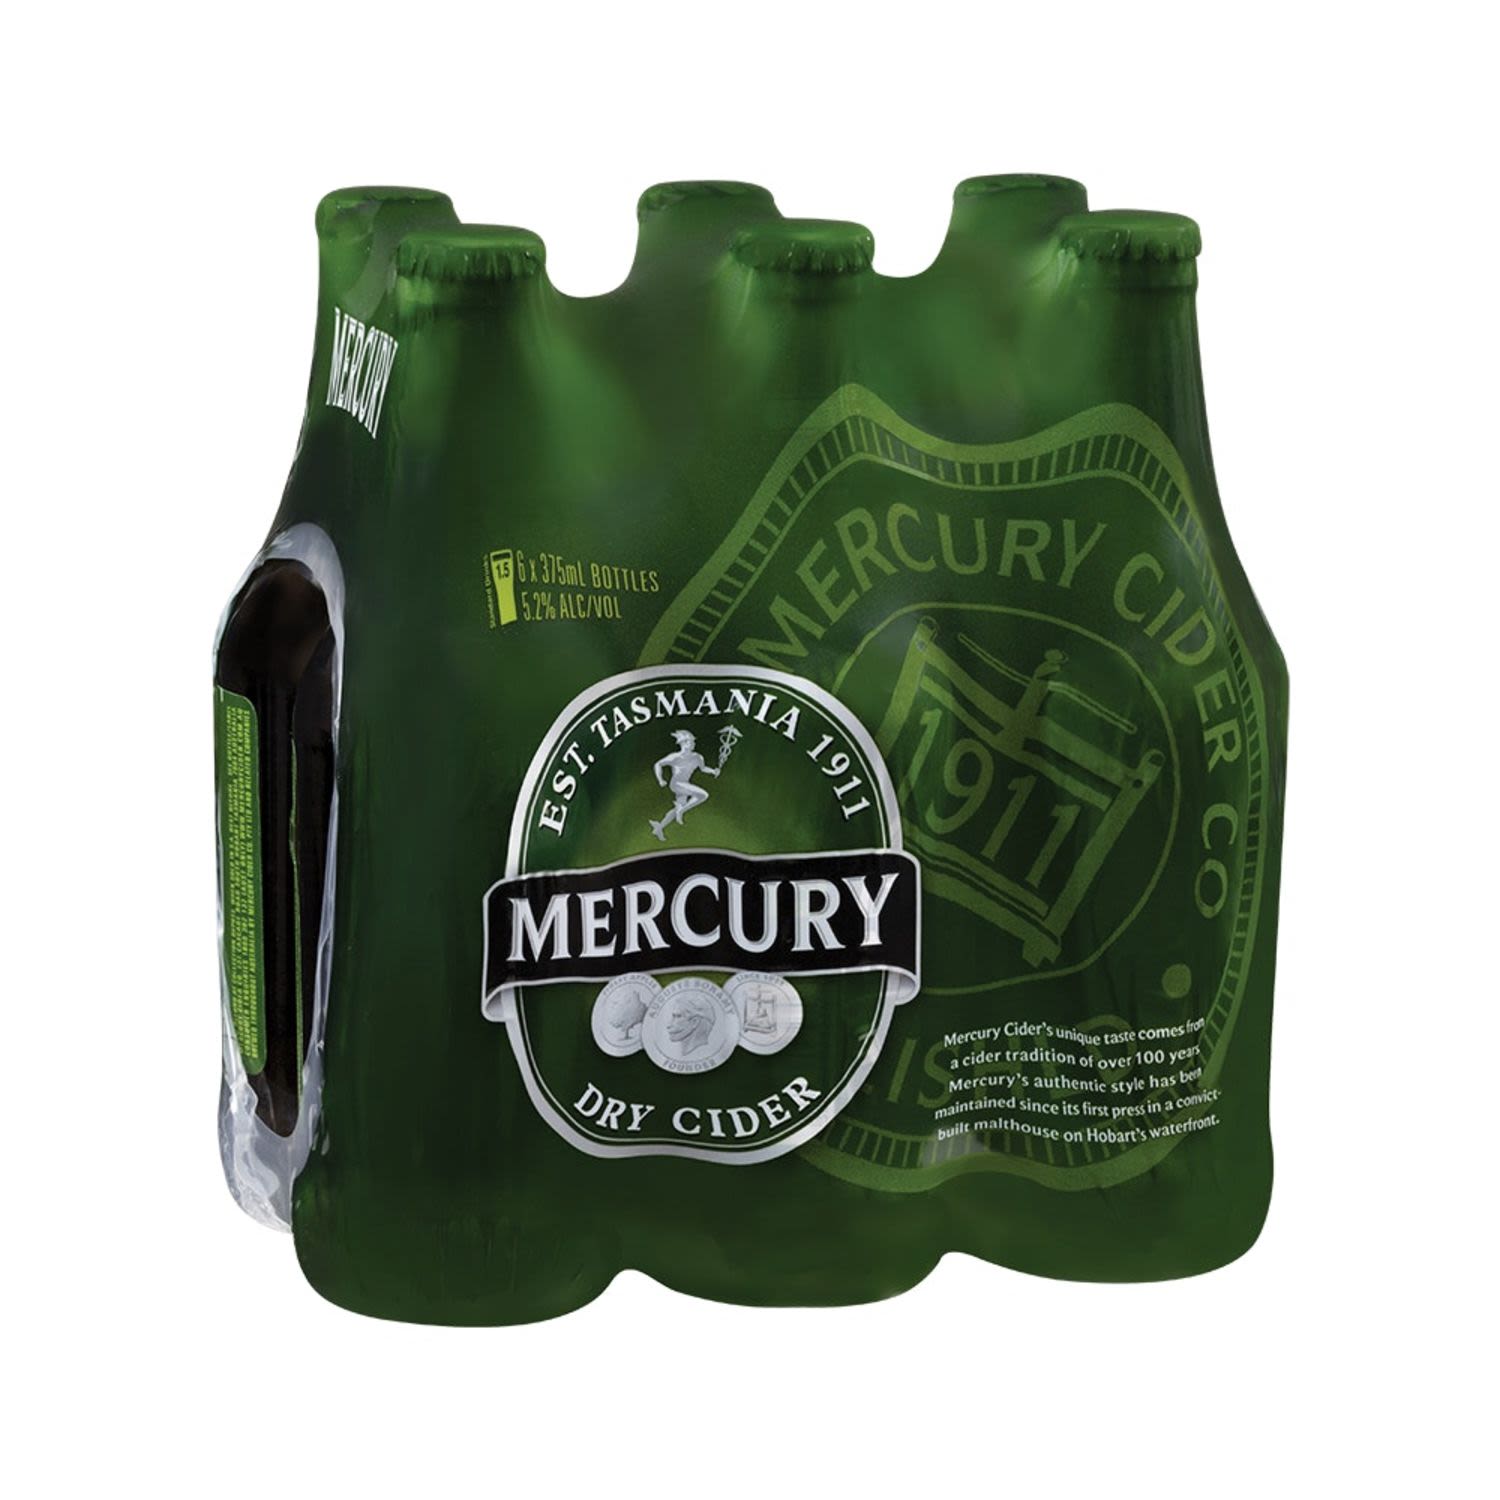 Mercury Dry Cider Bottle 375mL 6 Pack